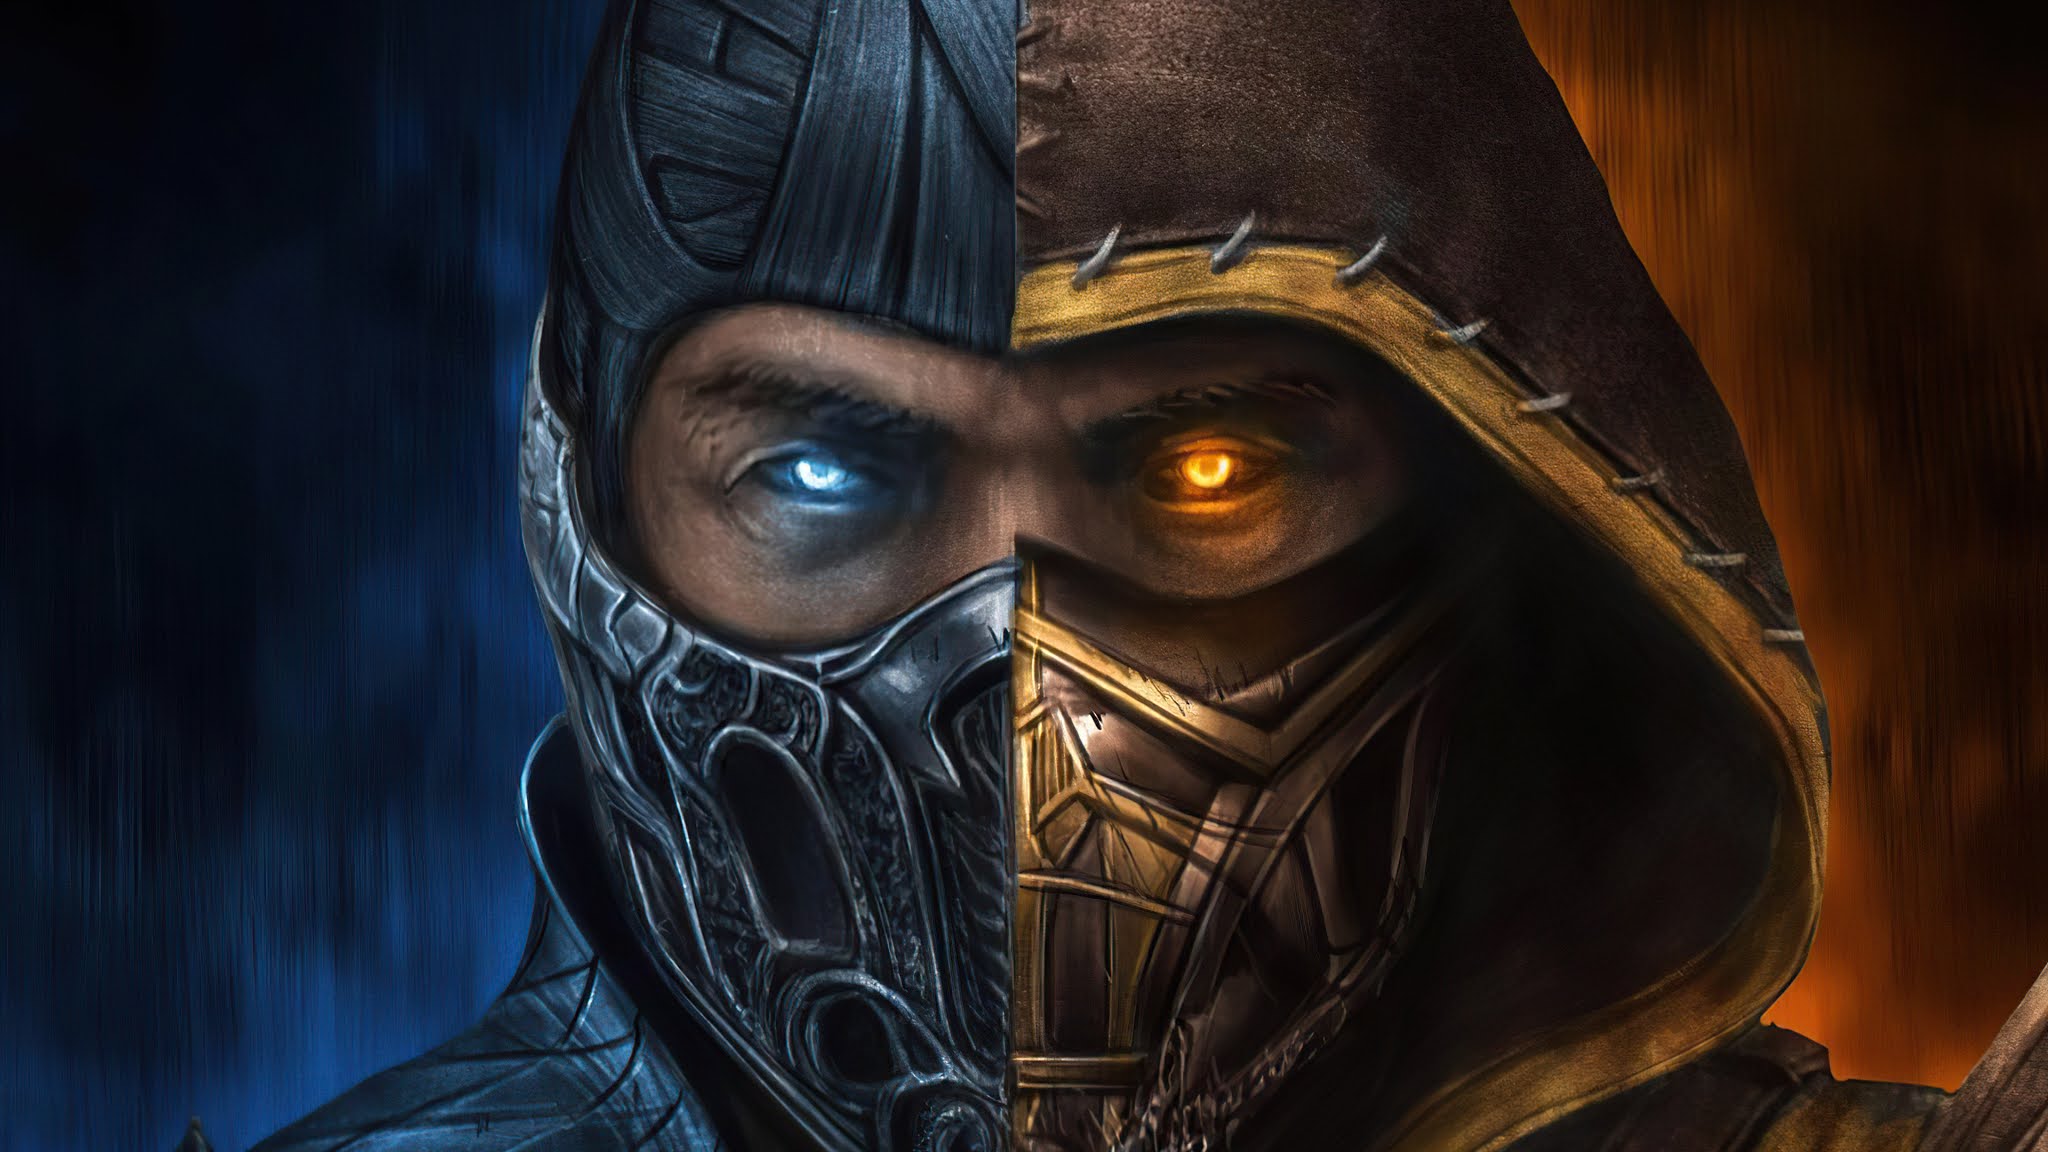 Mortal Kombat 11: Como treinar após escolher um personagem - Millenium